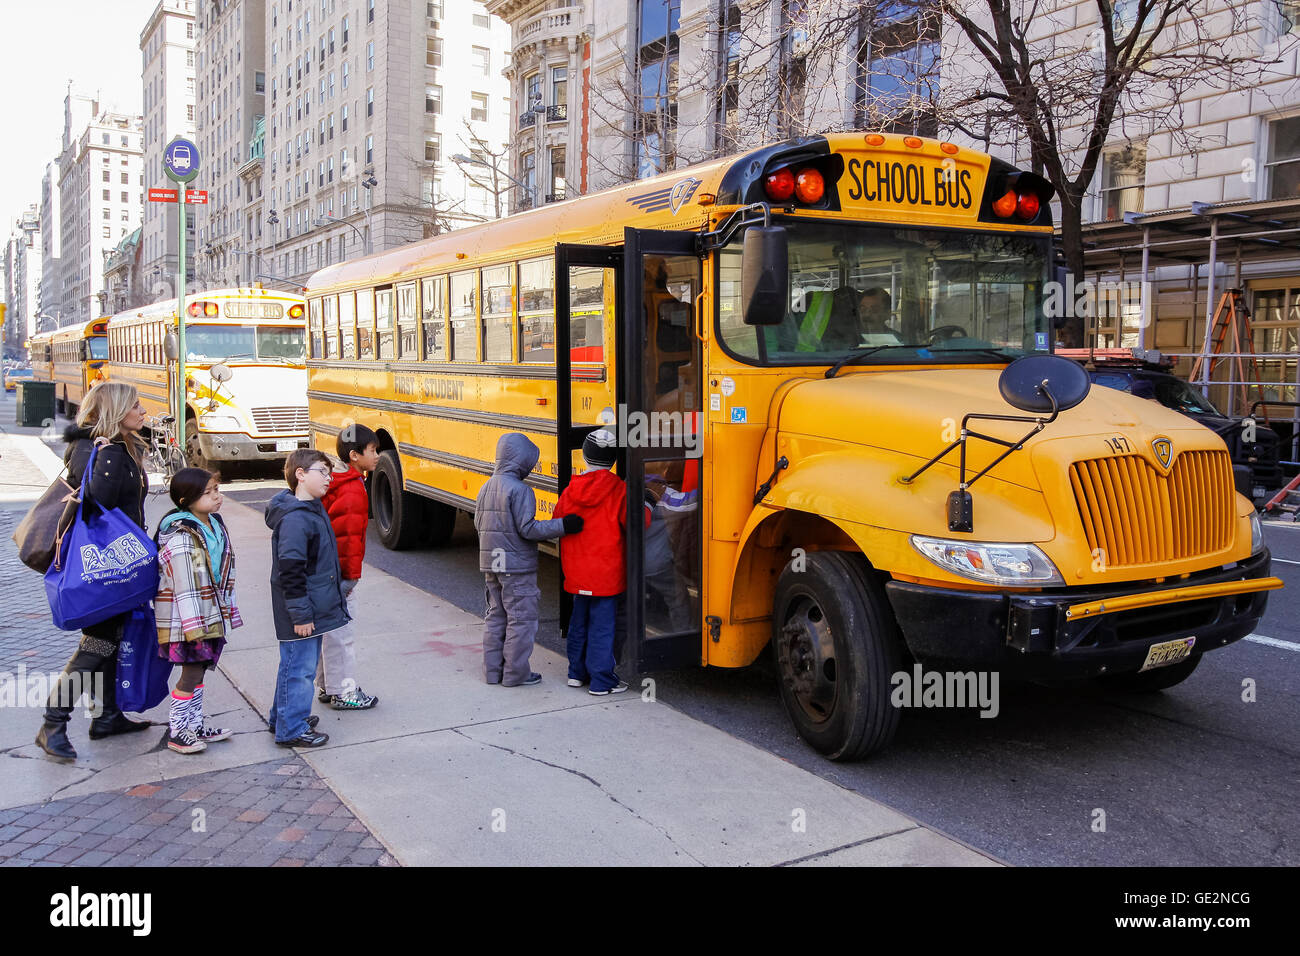 La ville de New York, USA - Mars 03, 2011 : Les enfants qui entrent à l'autobus scolaire dans le centre de nouveau votre ville. Banque D'Images